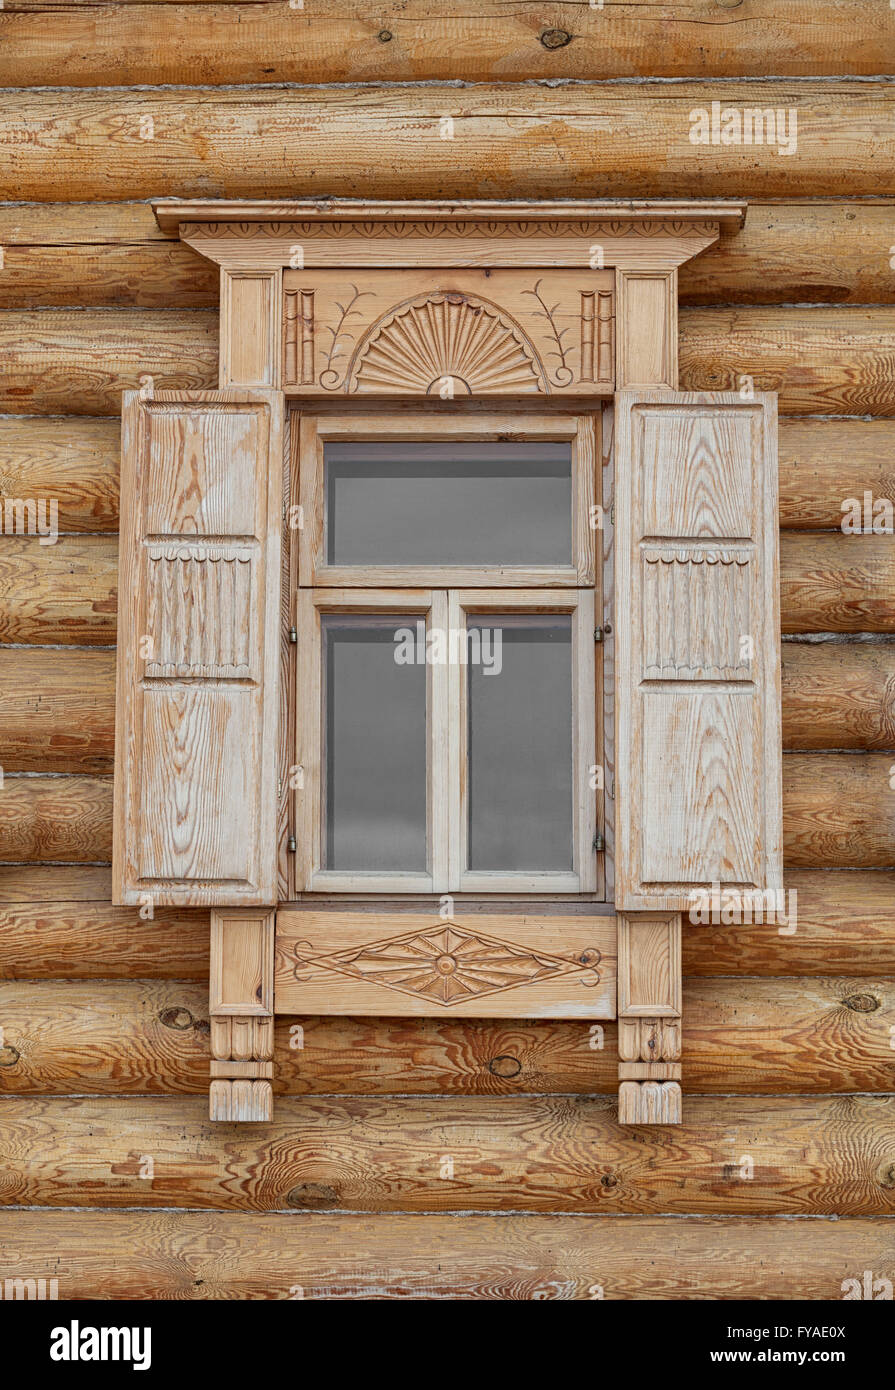 Prise d'un gros plan, magnifique, à l'ancienne fenêtre de style russe avec boiseries finement sculptés et des volets. Banque D'Images